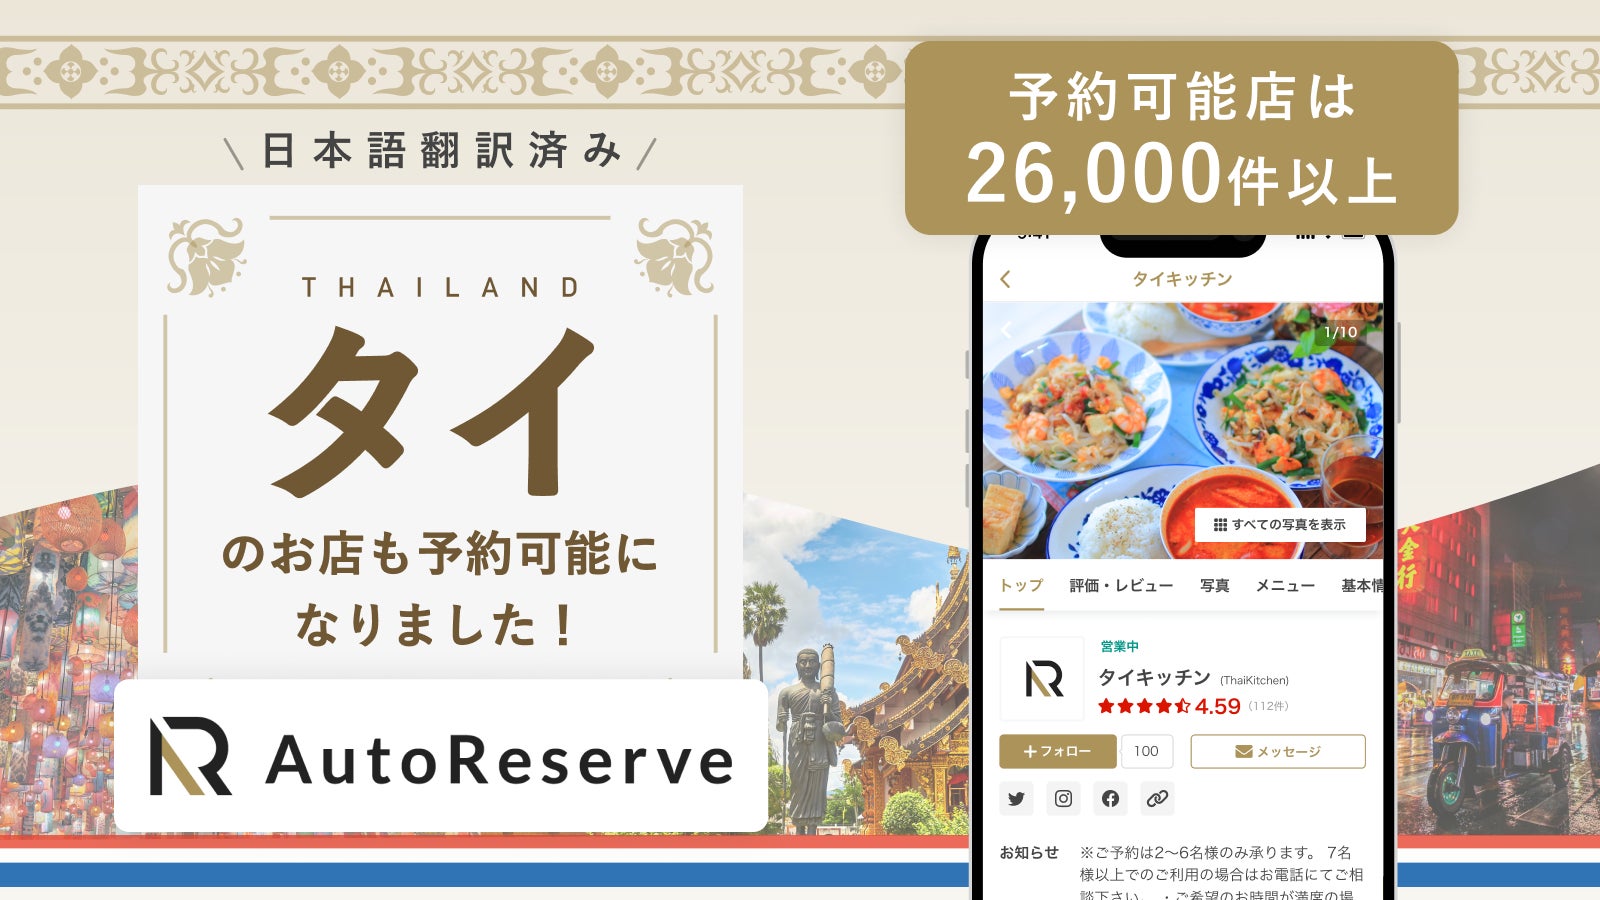 AIによるレストラン予約サービス「AutoReserve」、対応可能国にタイを追加